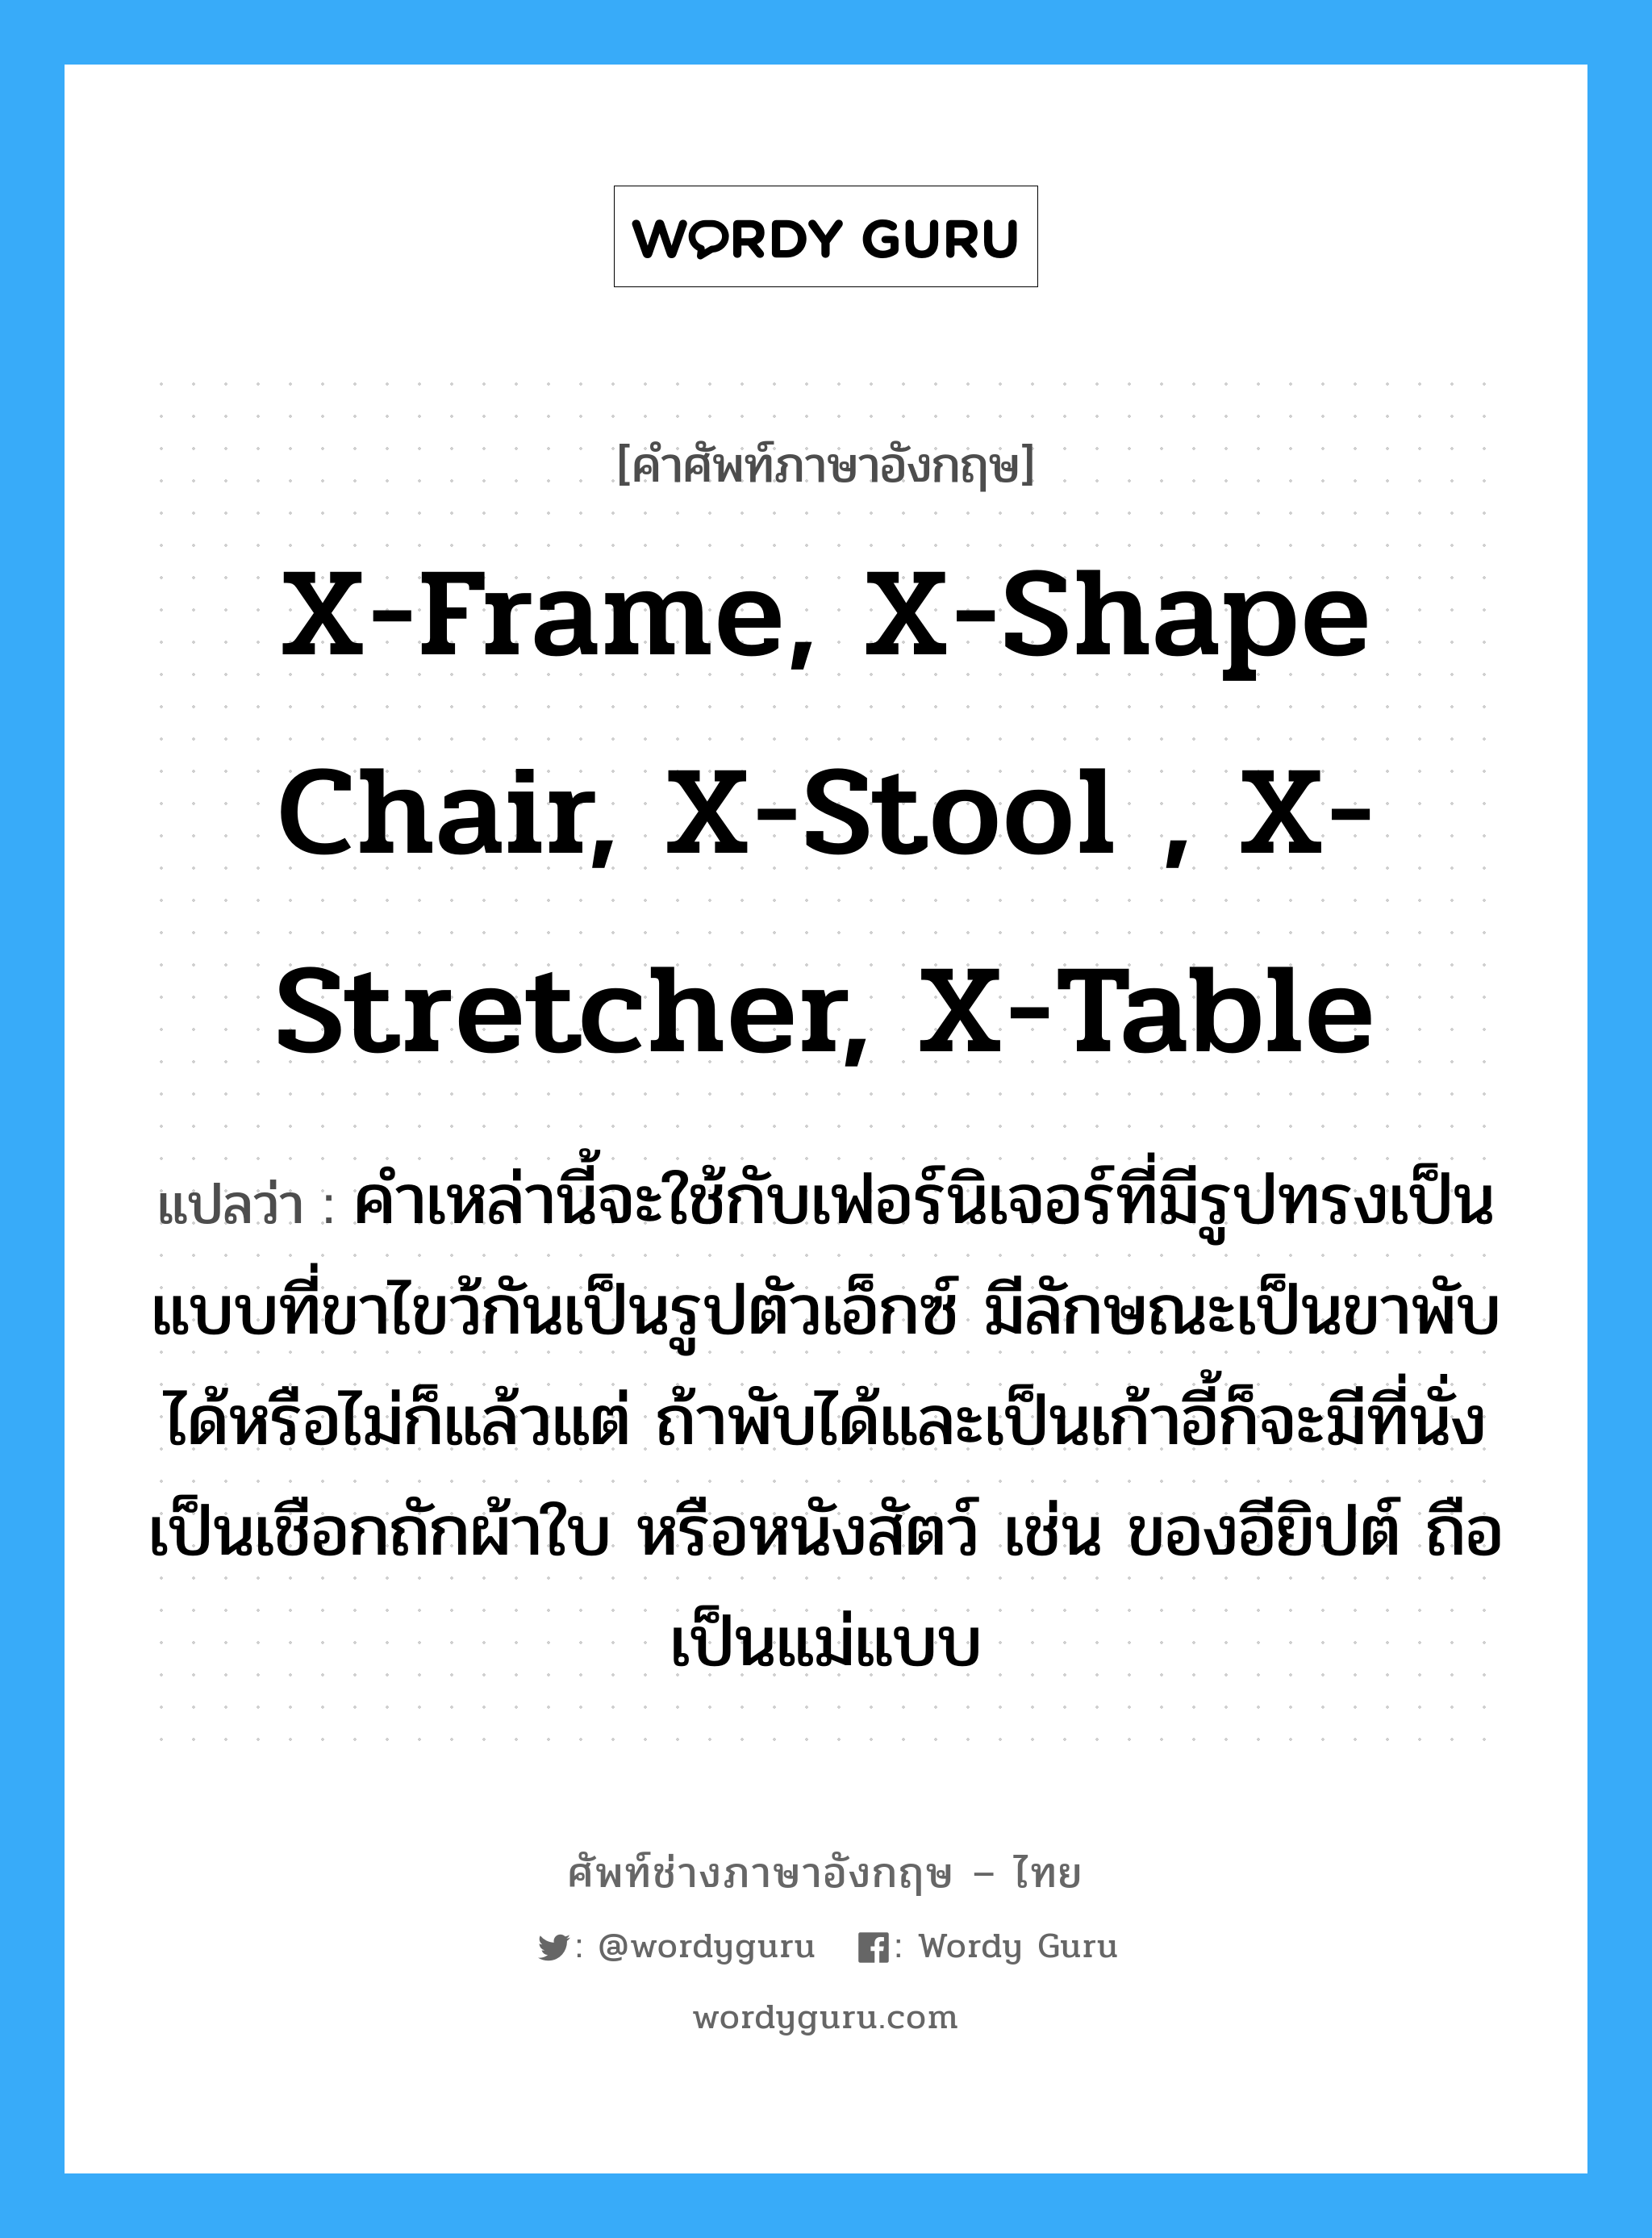 x-frame, x-shape chair, x-stool , x-stretcher, x-table แปลว่า?, คำศัพท์ช่างภาษาอังกฤษ - ไทย x-frame, x-shape chair, x-stool , x-stretcher, x-table คำศัพท์ภาษาอังกฤษ x-frame, x-shape chair, x-stool , x-stretcher, x-table แปลว่า คำเหล่านี้จะใช้กับเฟอร์นิเจอร์ที่มีรูปทรงเป็นแบบที่ขาไขว้กันเป็นรูปตัวเอ็กซ์ มีลักษณะเป็นขาพับได้หรือไม่ก็แล้วแต่ ถ้าพับได้และเป็นเก้าอี้ก็จะมีที่นั่งเป็นเชือกถักผ้าใบ หรือหนังสัตว์ เช่น ของอียิปต์ ถือเป็นแม่แบบ